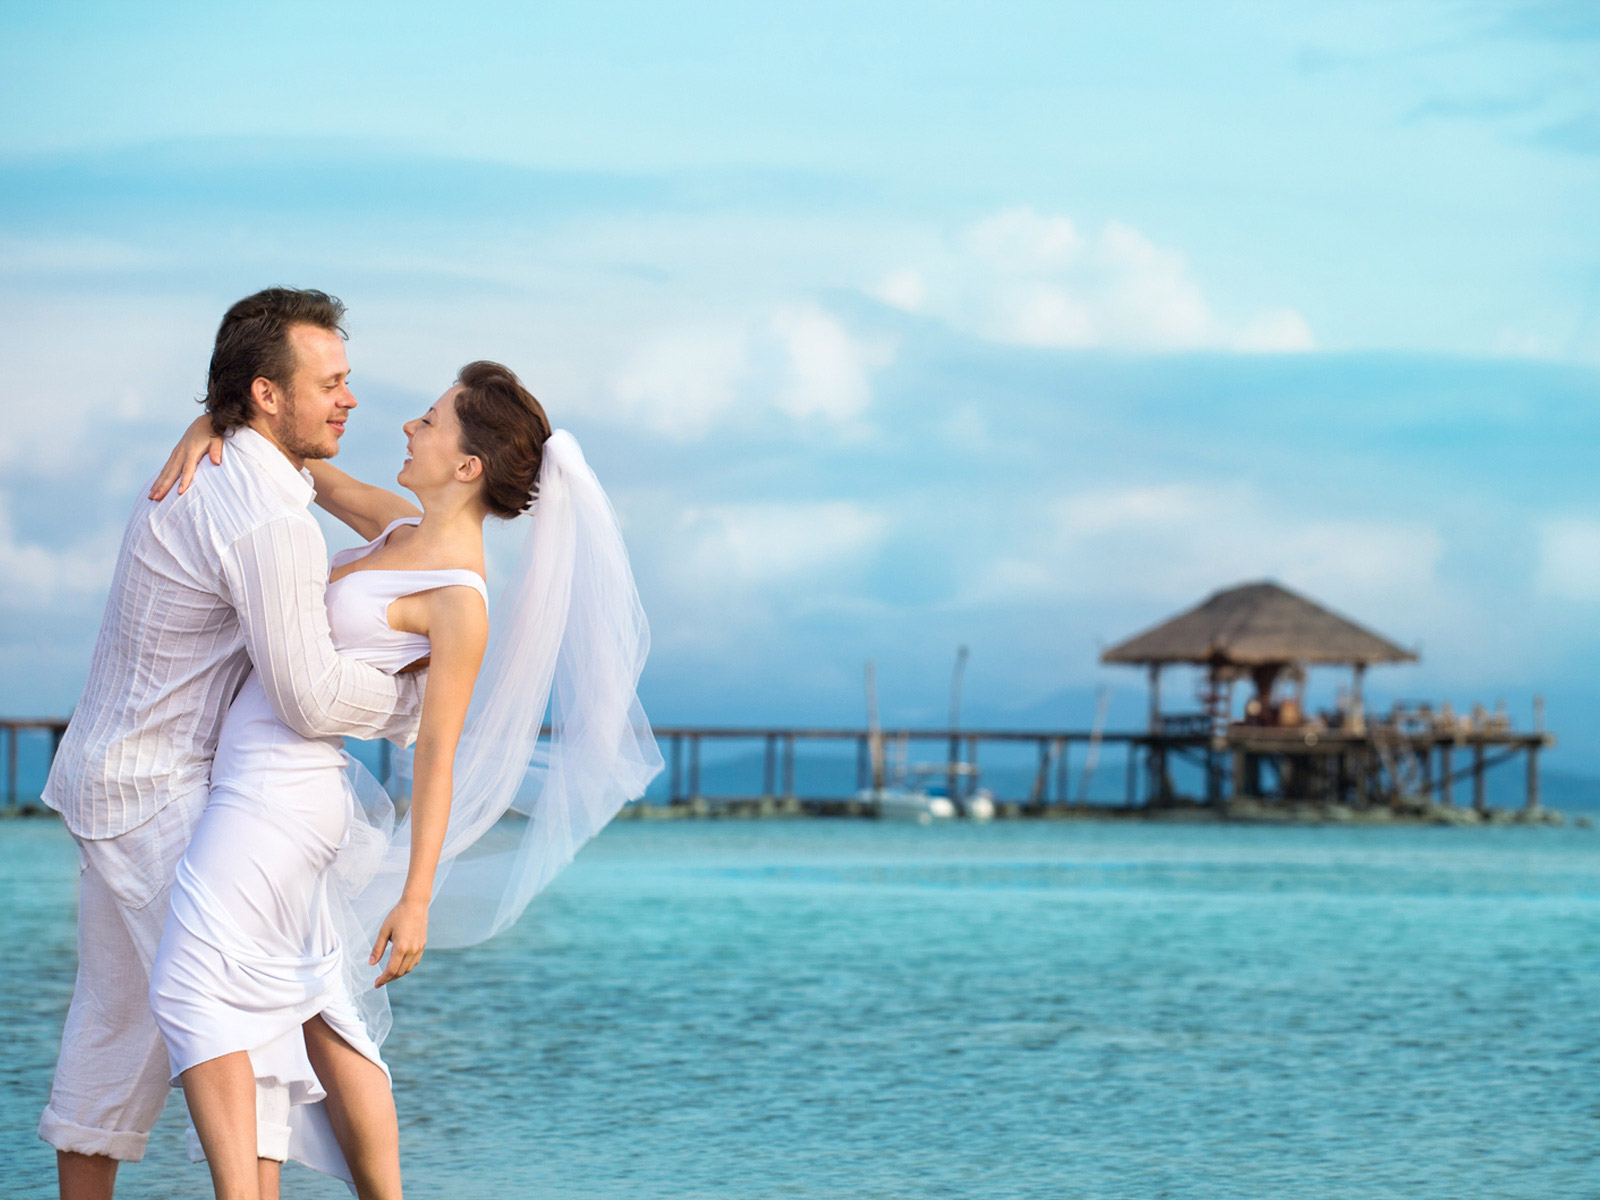 Eine Heirat am Strand vor dem blauen Meer.